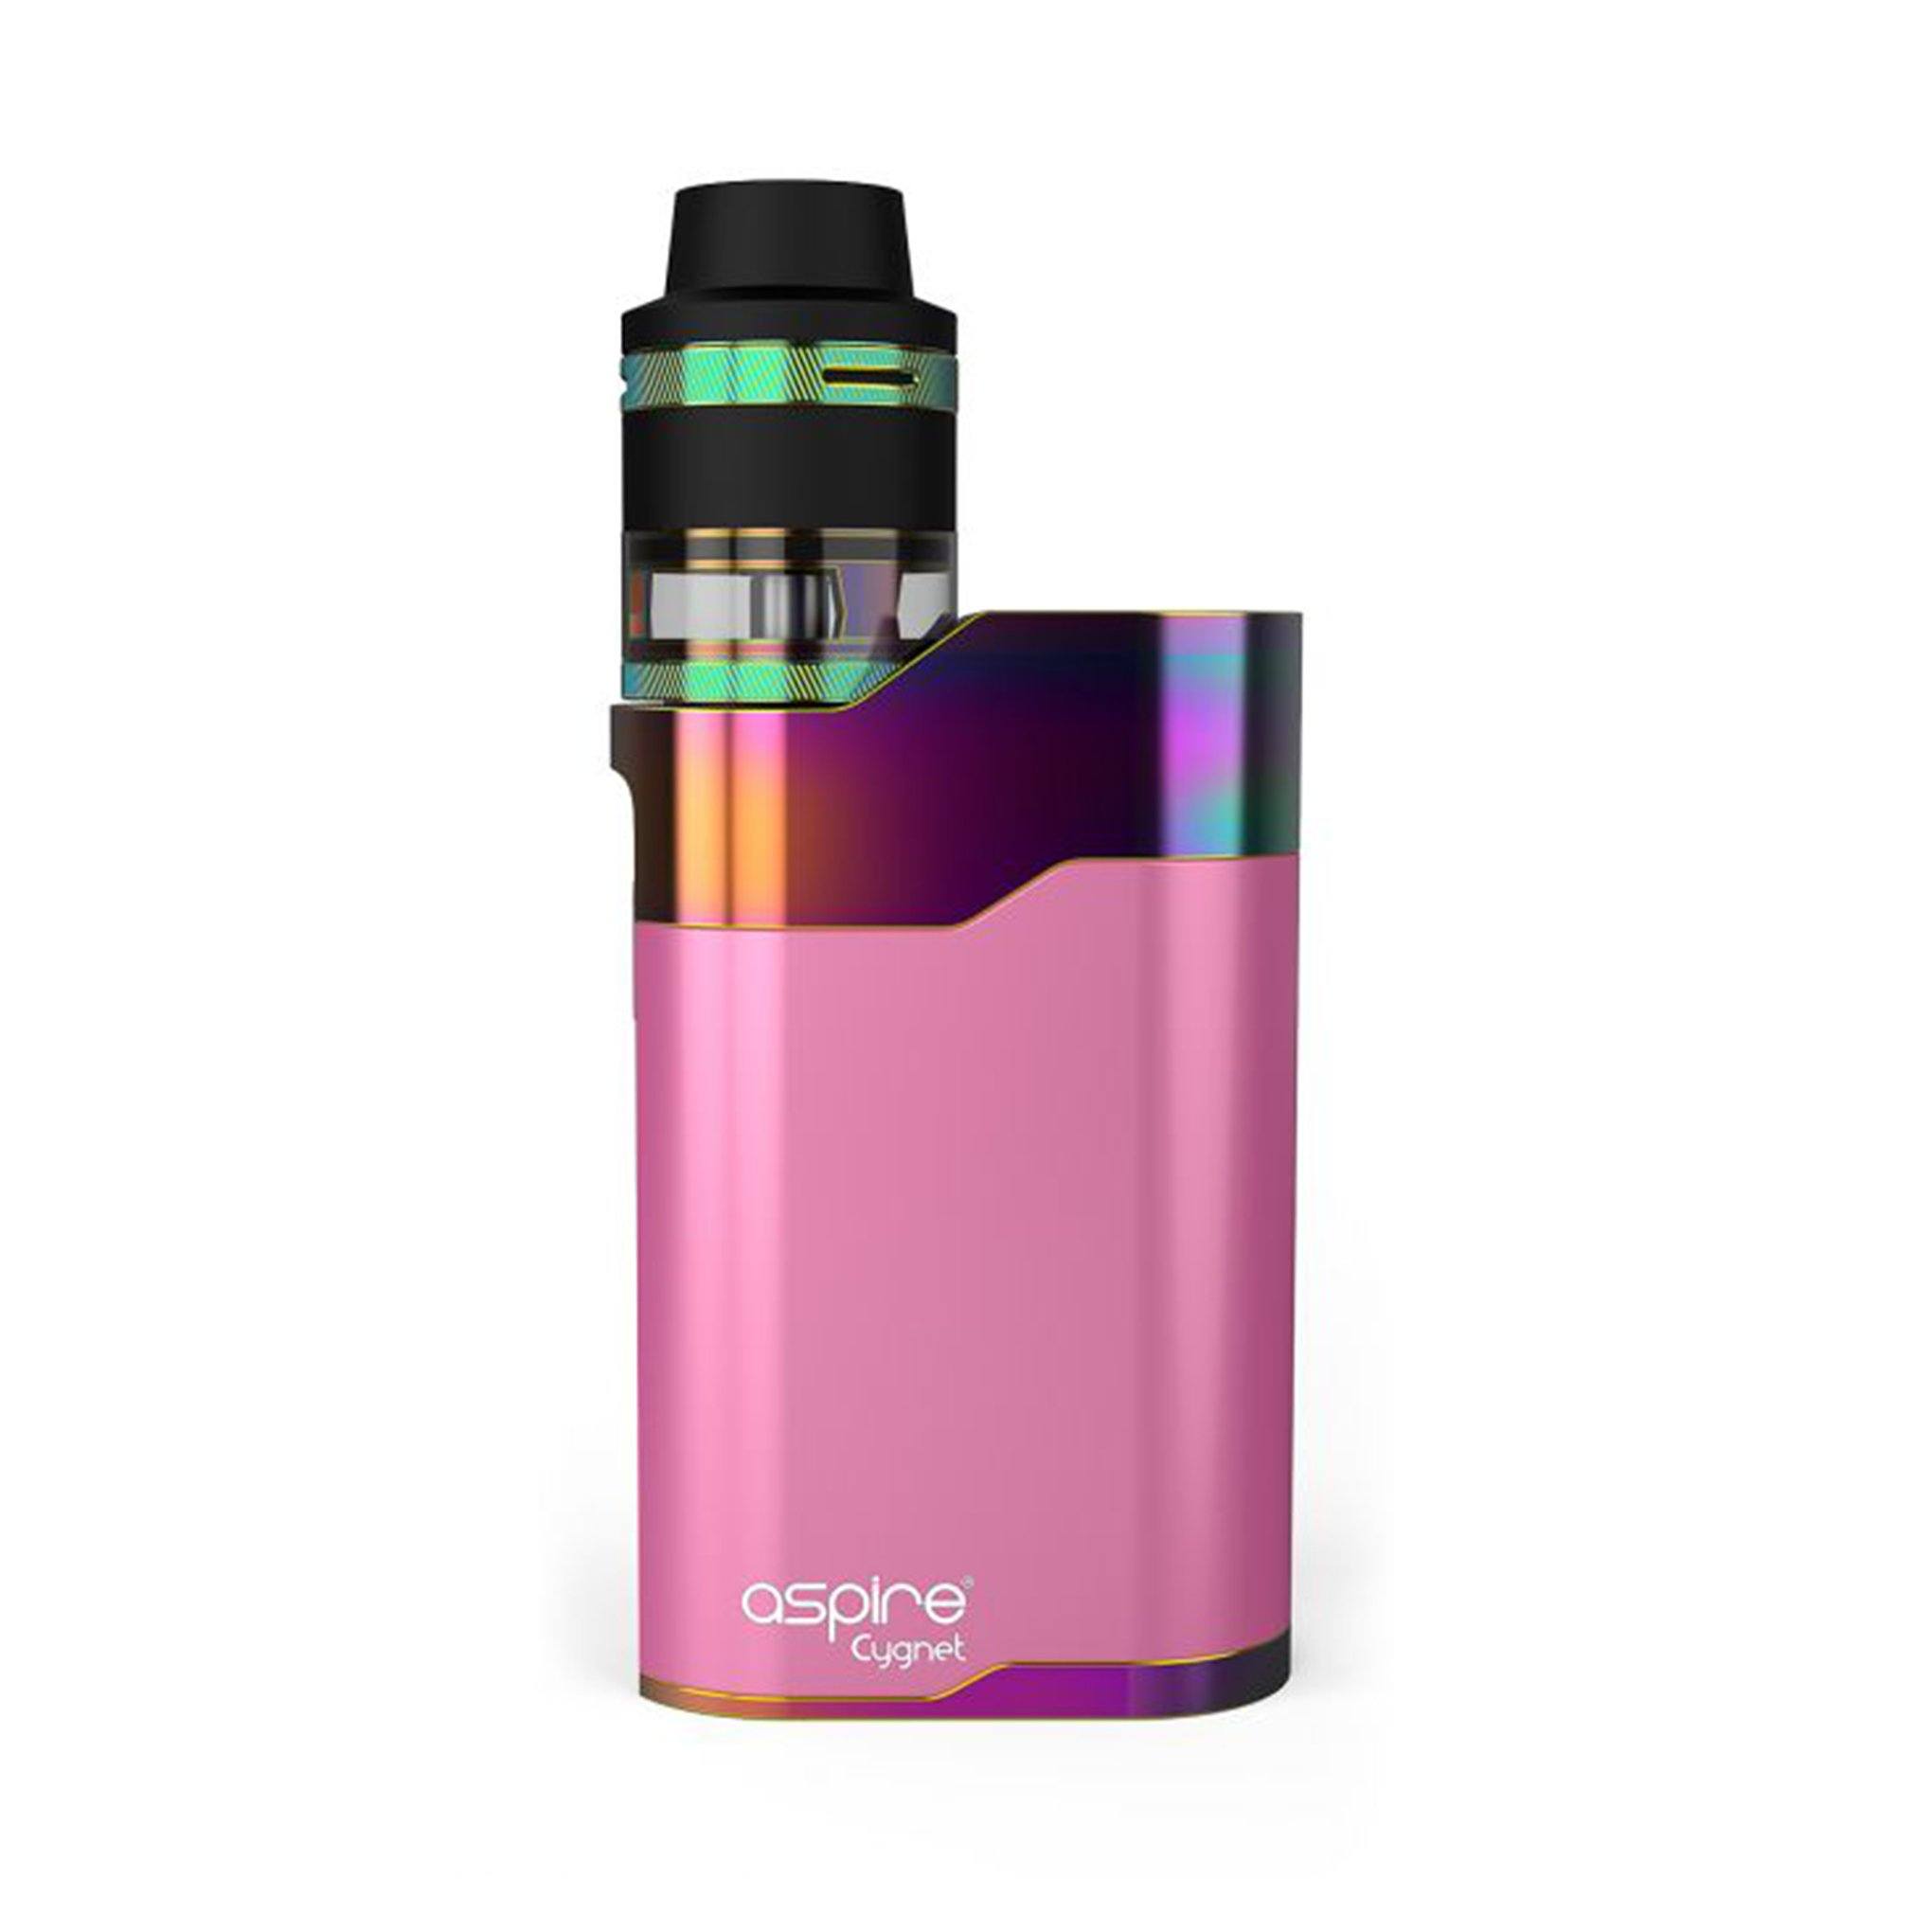 Aspire Cygnet Revvo Kit Pink/Rainbow